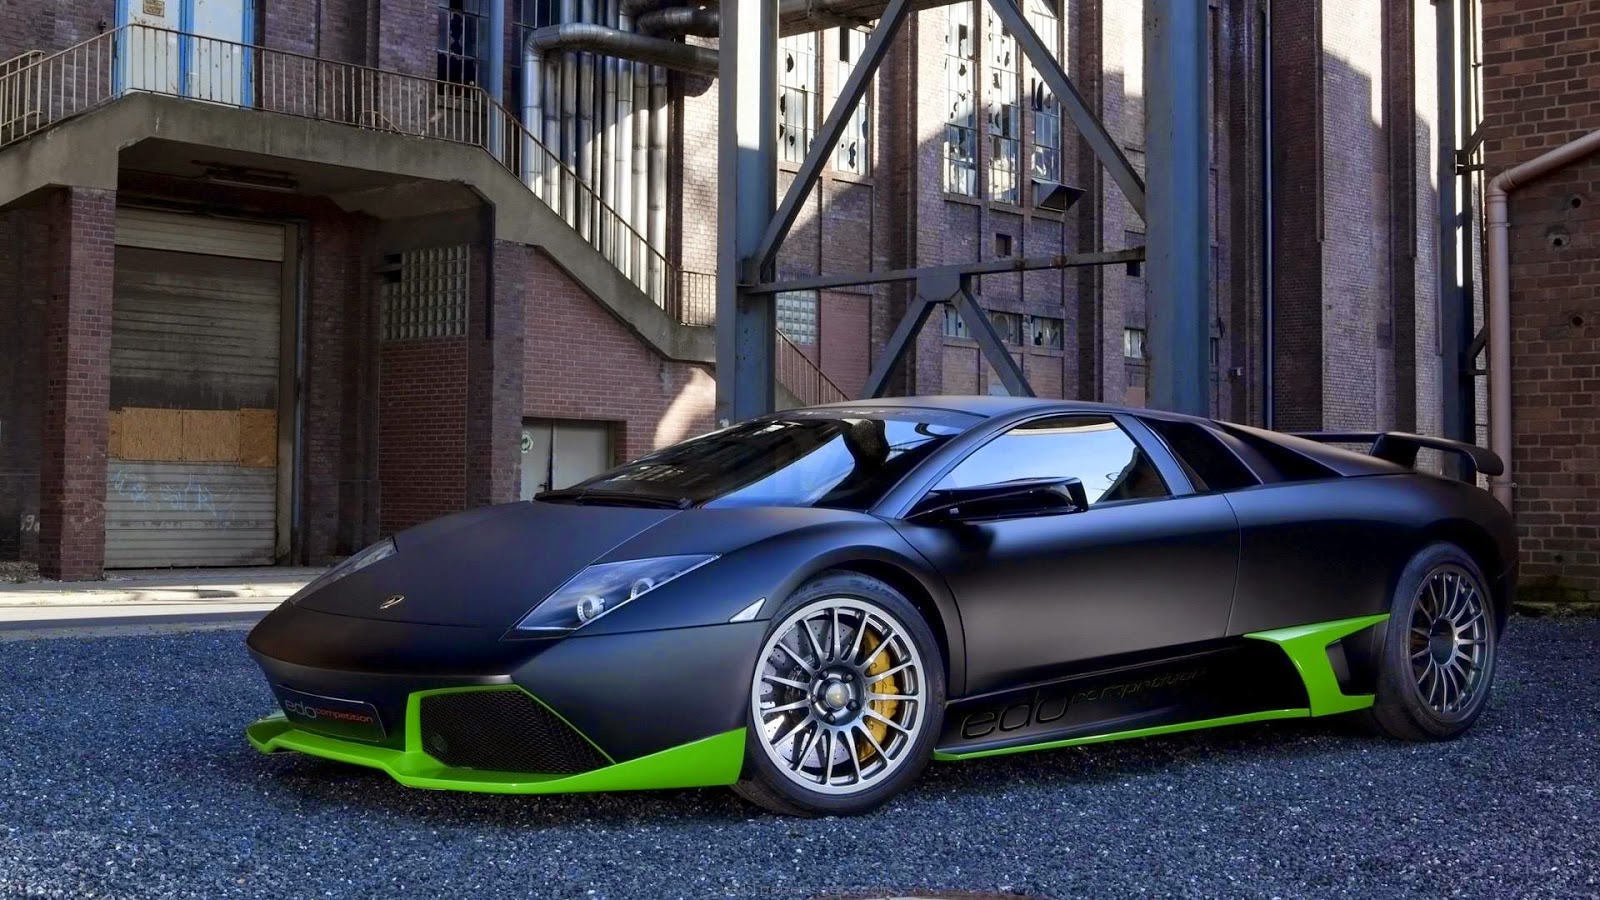 Kumpulan Foto Mobil Lamborghini Super Keren Terbaru | Modif Motor Mobil